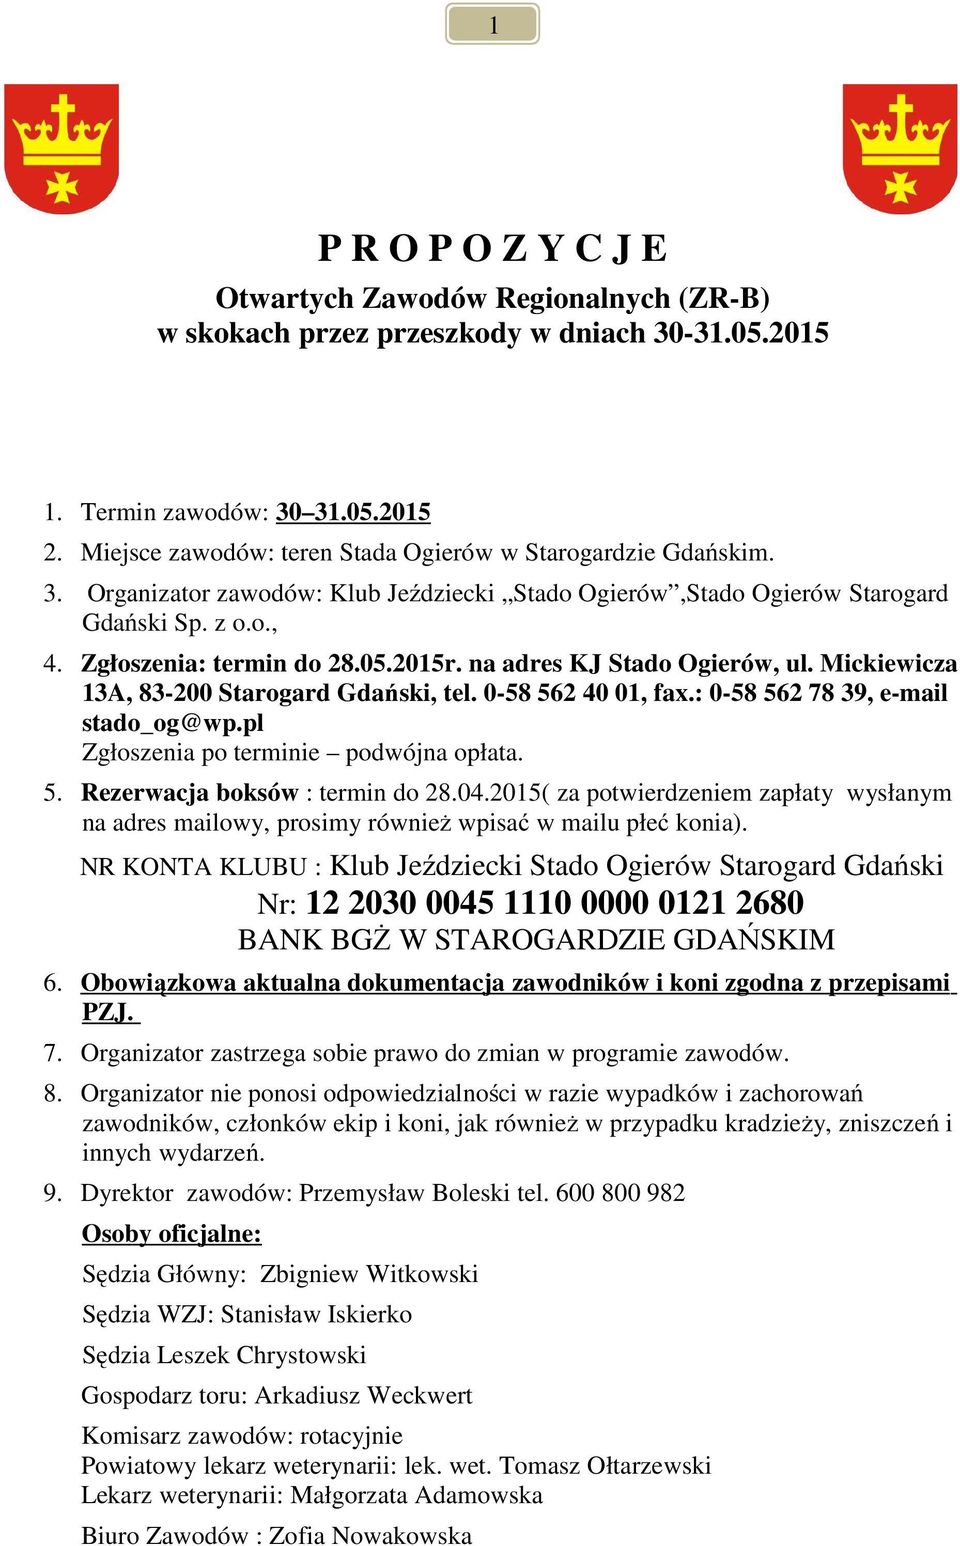 Mickiewicza 3A, 83-200 Starogard Gdański, tel. 0-58 562 40 0, fax.: 0-58 562 78 39, e-mail stado_og@wp.pl Zgłoszenia po terminie podwójna opłata. 5. Rezerwacja boksów : termin do 28.04.